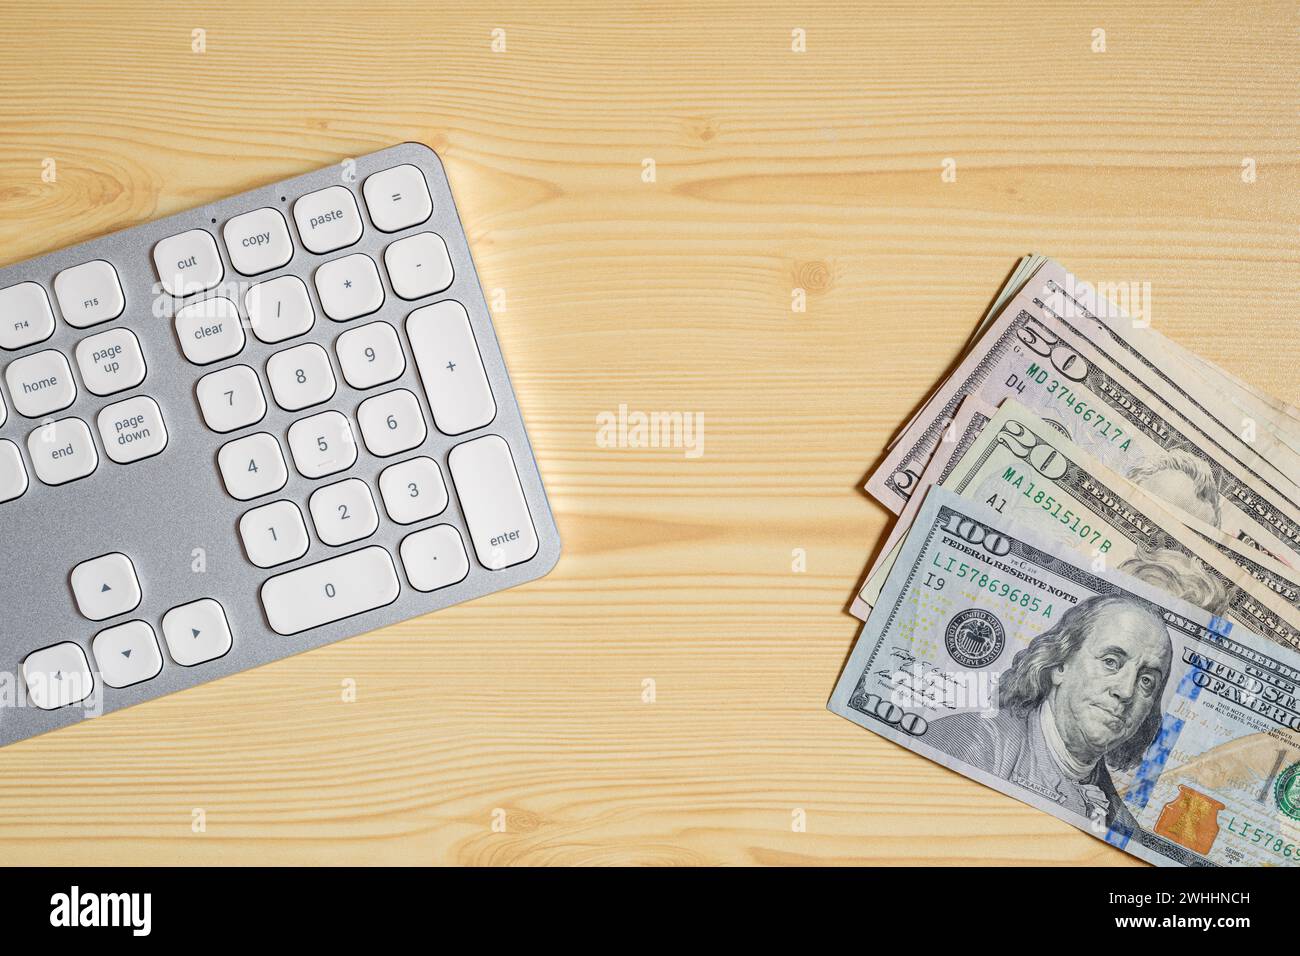 Desktop-PC-Computertastatur und Geldscheine in US-Dollar am Schreibtisch, Draufsicht Stockfoto